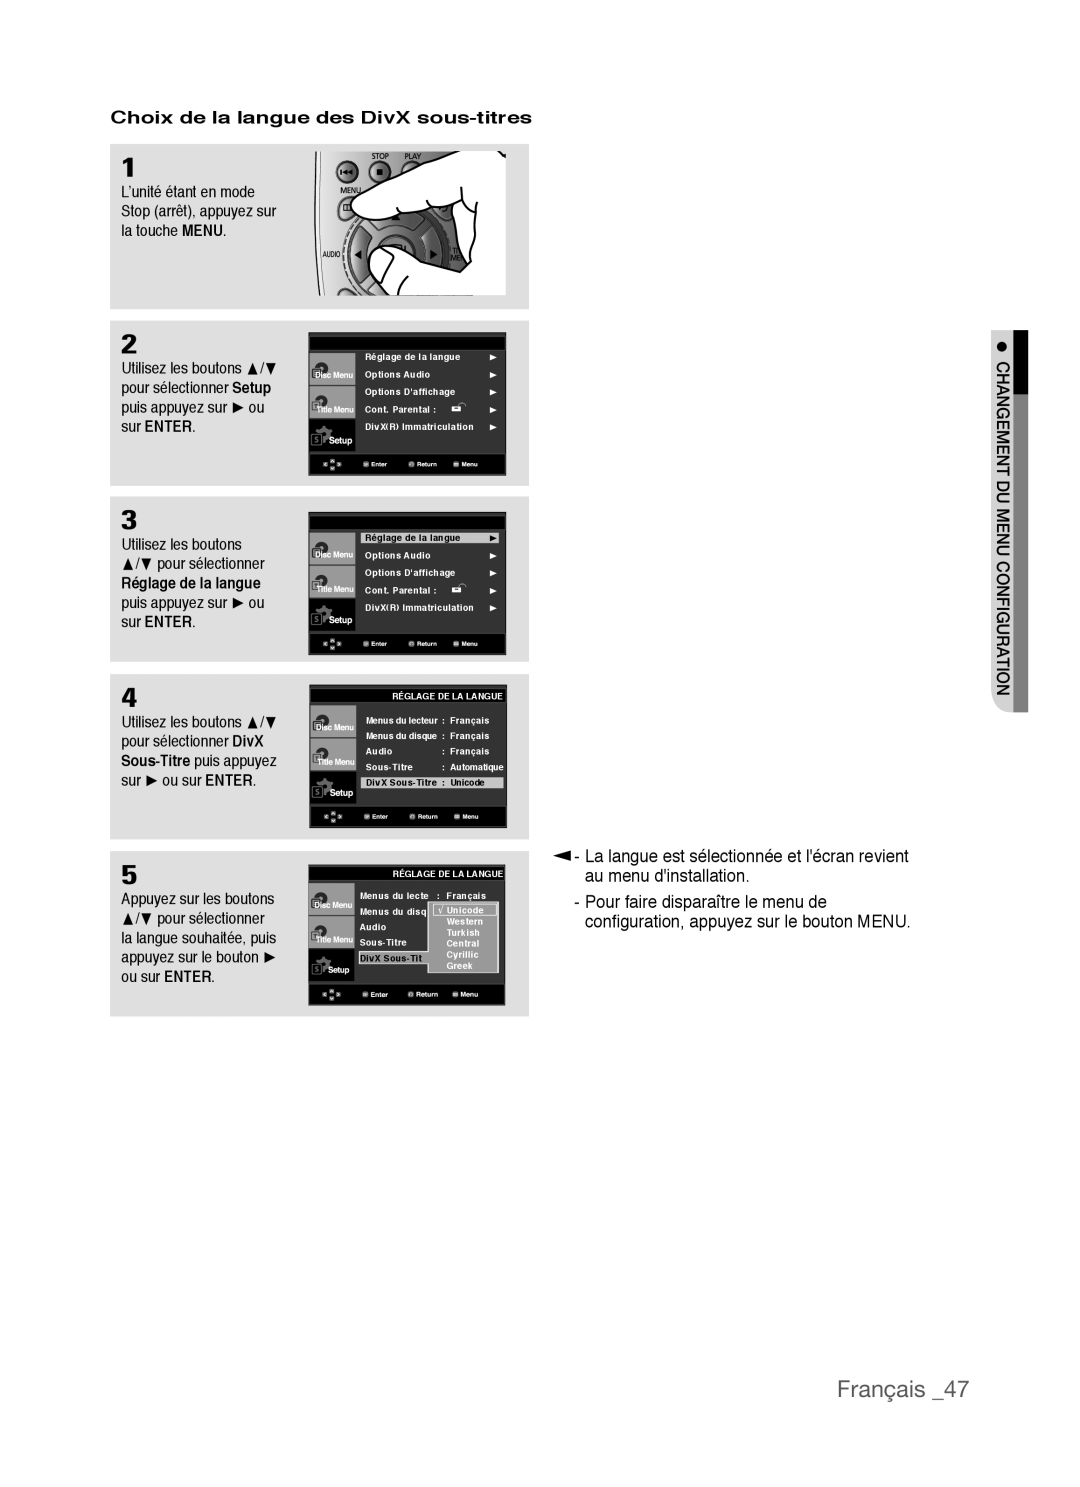 Samsung AK68-01770G Français, Choix de la langue des DivX sous-titres, au menu dinstallation, Réglage de la langue 